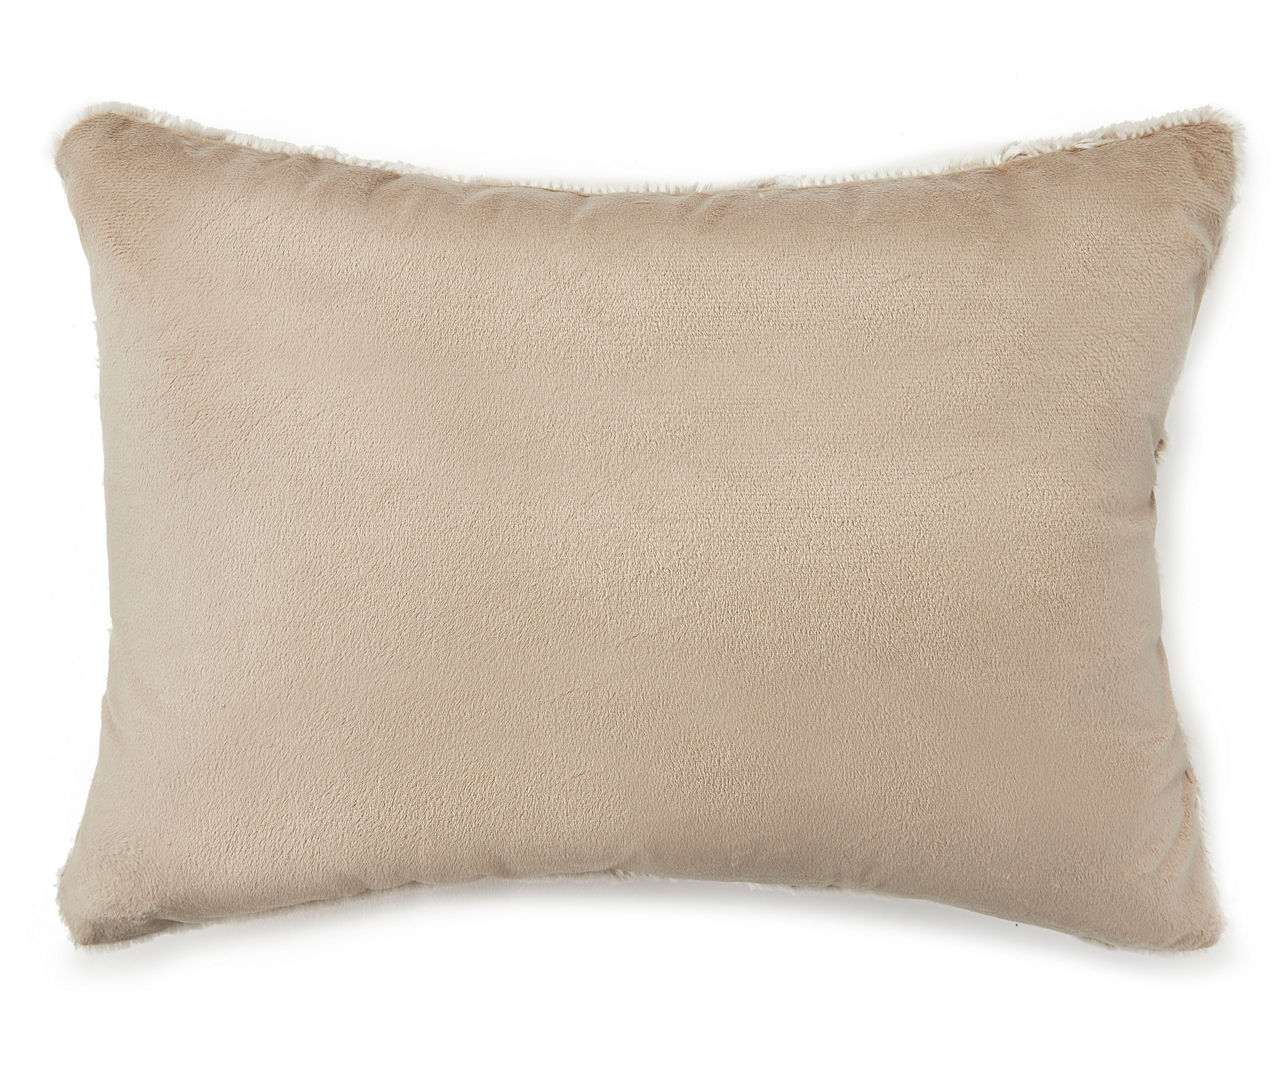 Tan Fur Lumbar Pillow